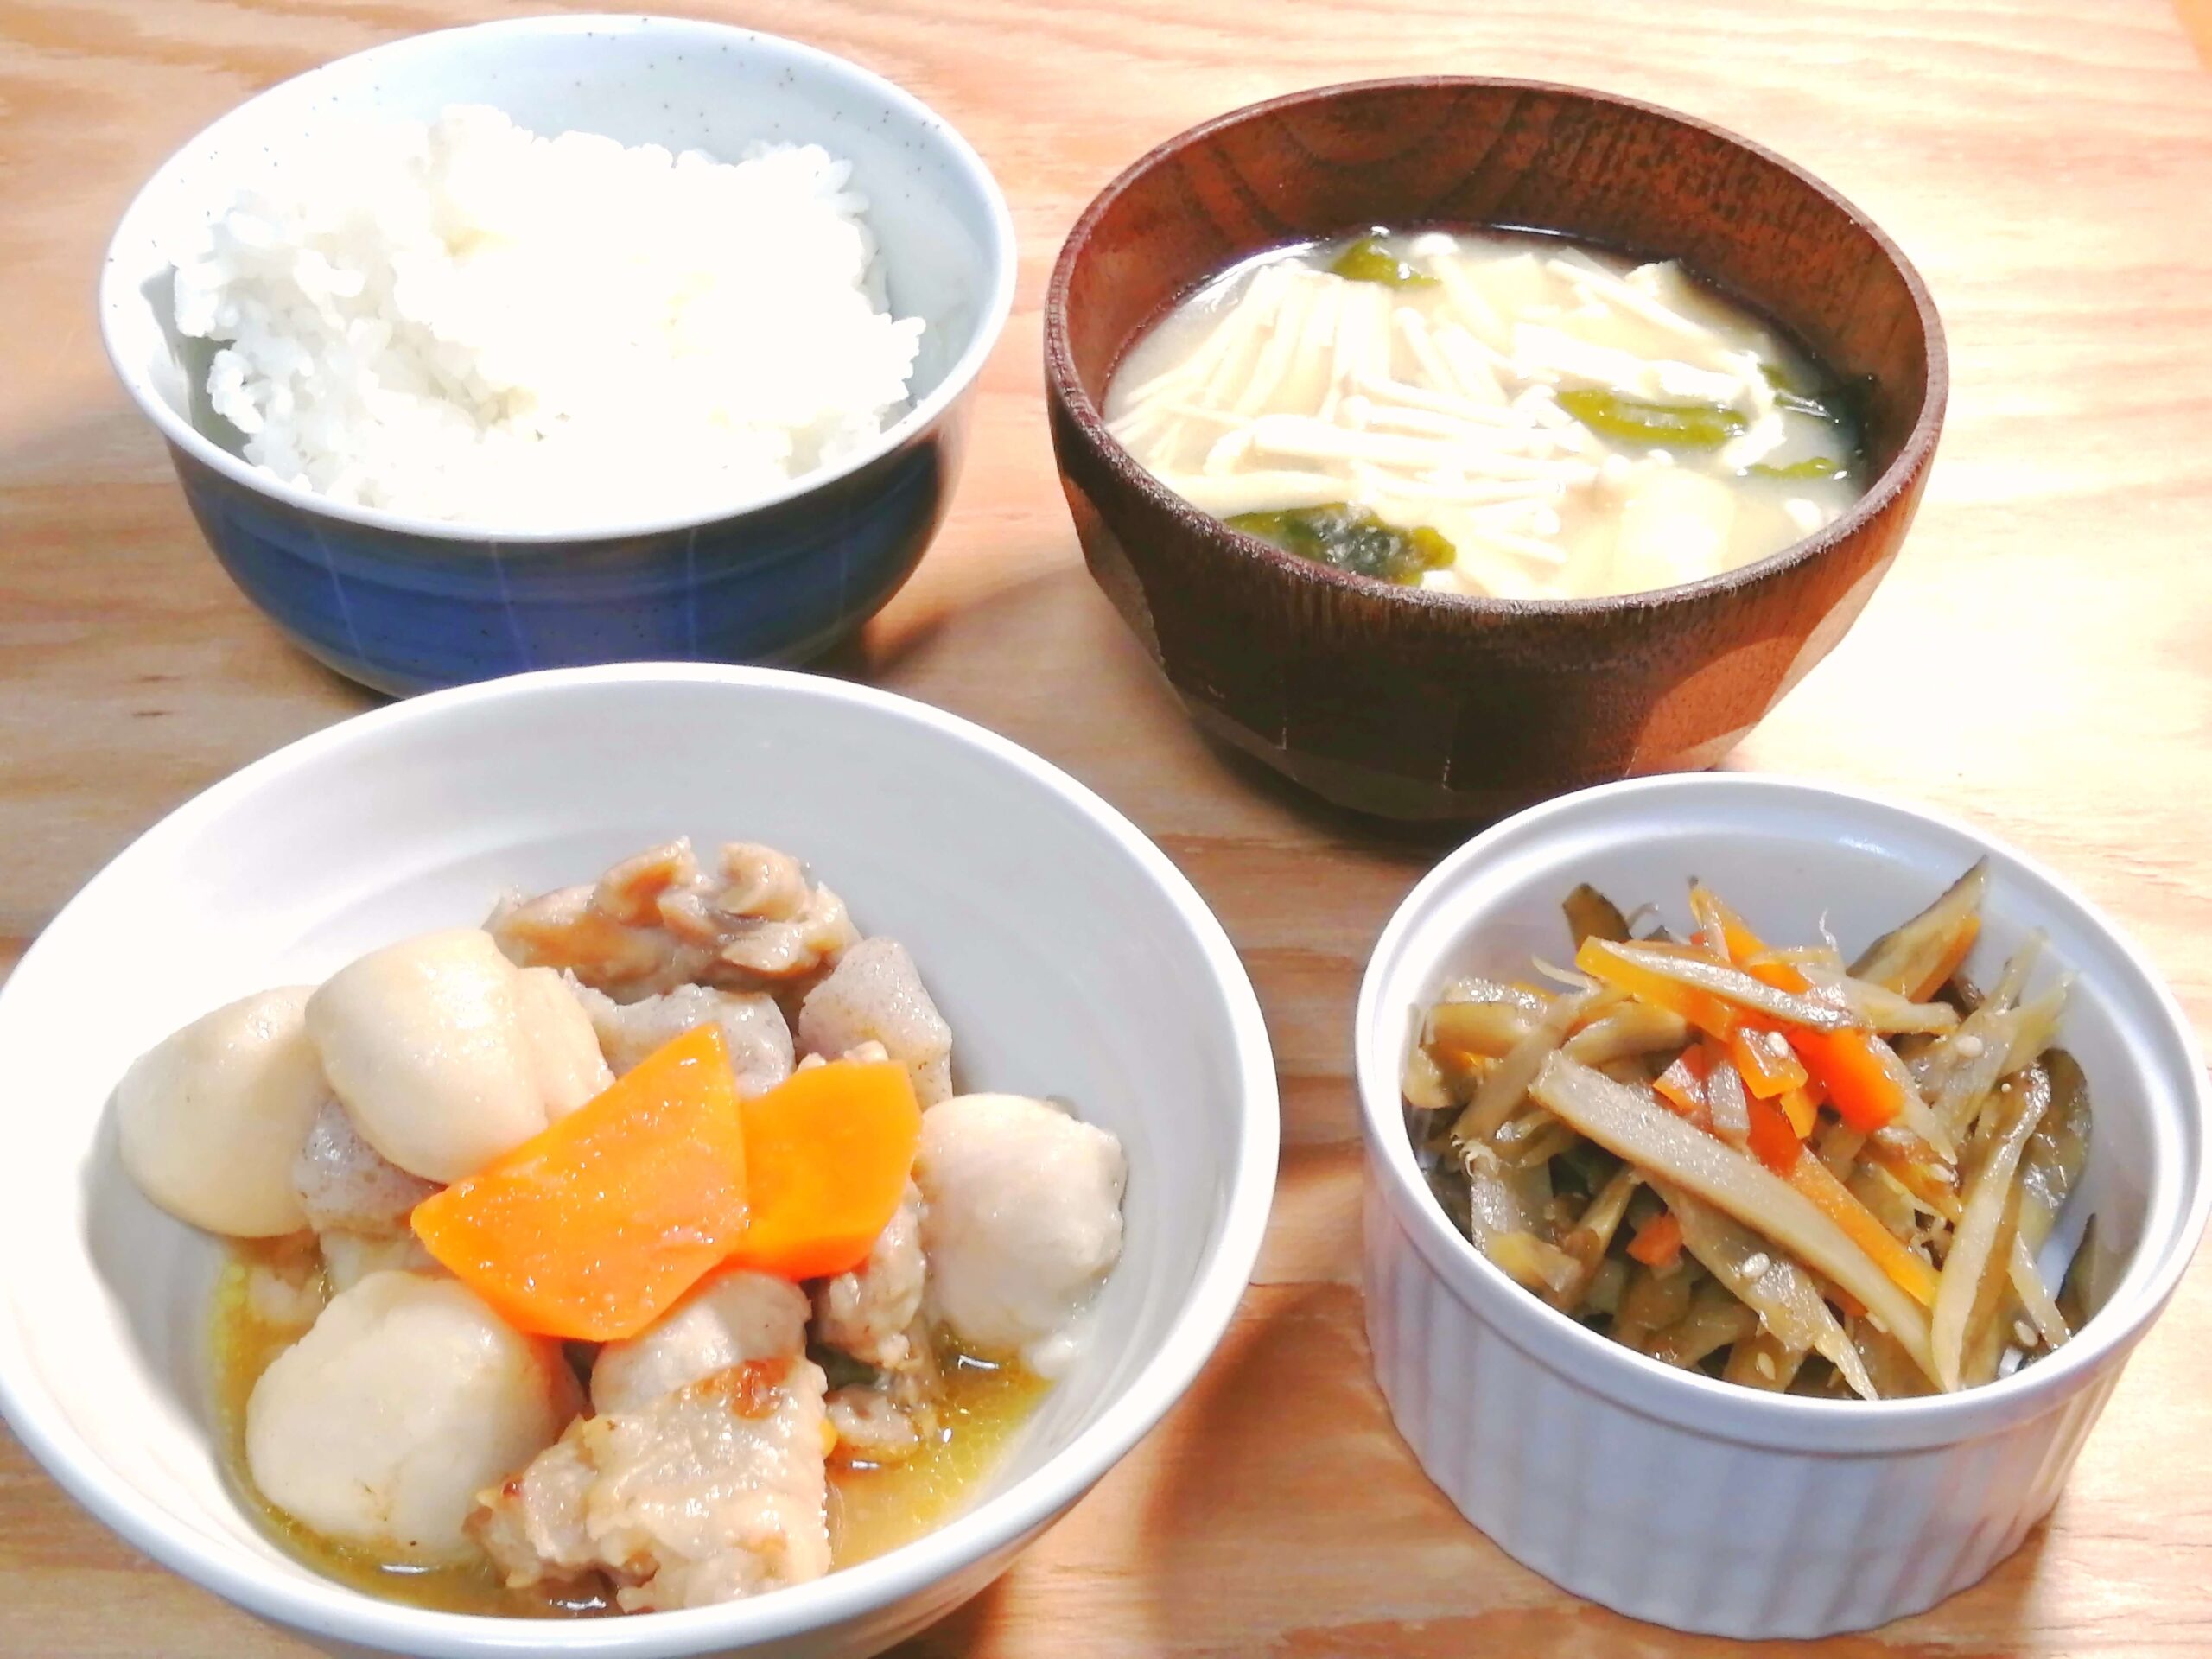 めんつゆで里芋と鶏肉の煮物とごぼうの軟らか金平定食、写真